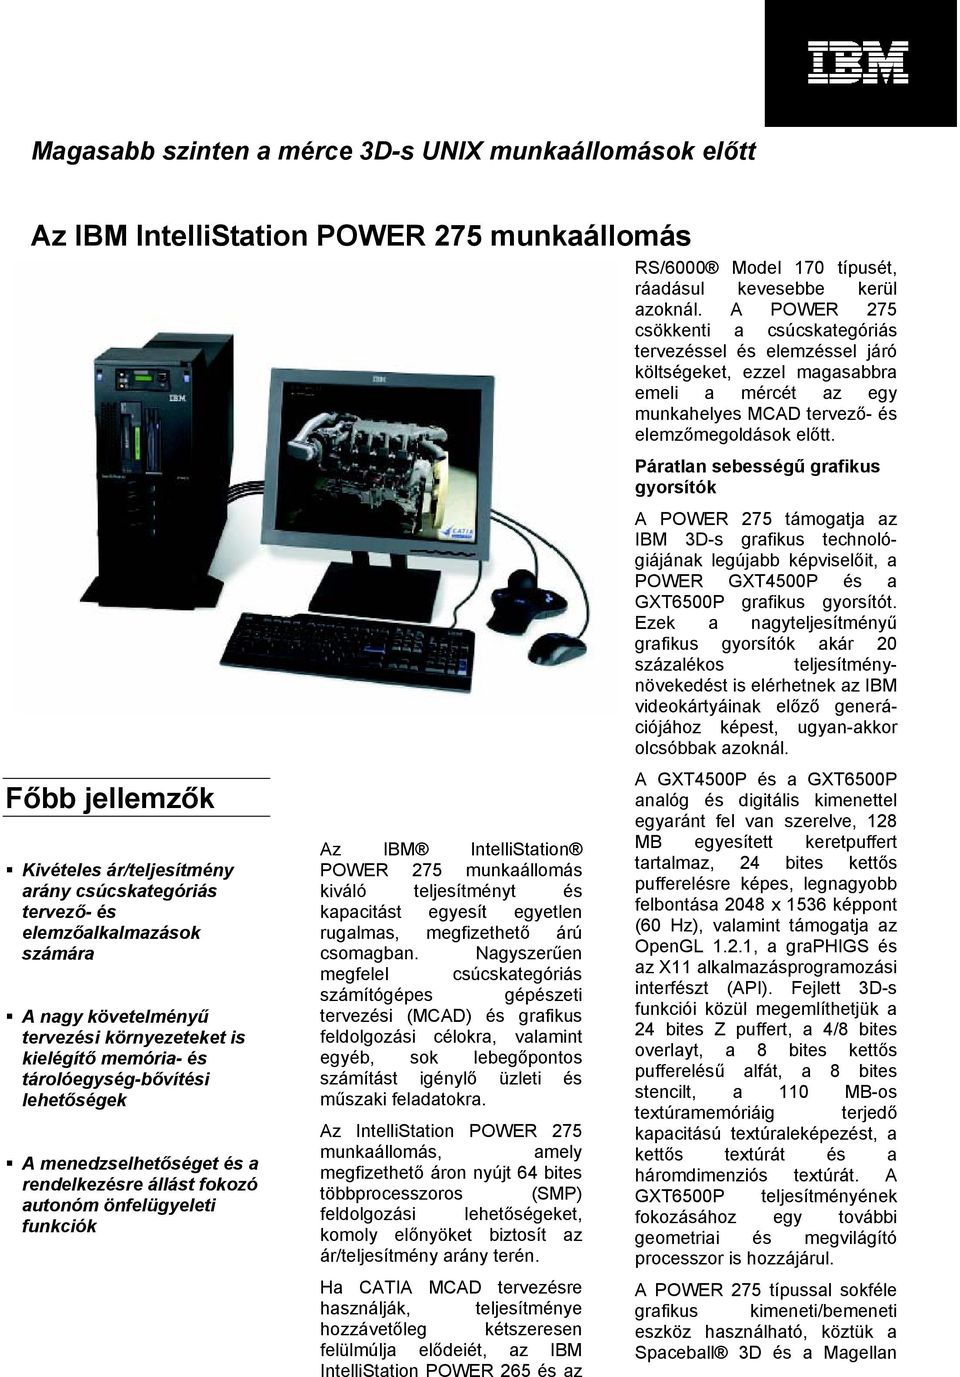 IBM IntelliStation POWER 275 munkaállomás kiváló teljesítményt és kapacitást egyesít egyetlen rugalmas, megfizethető árú csomagban.